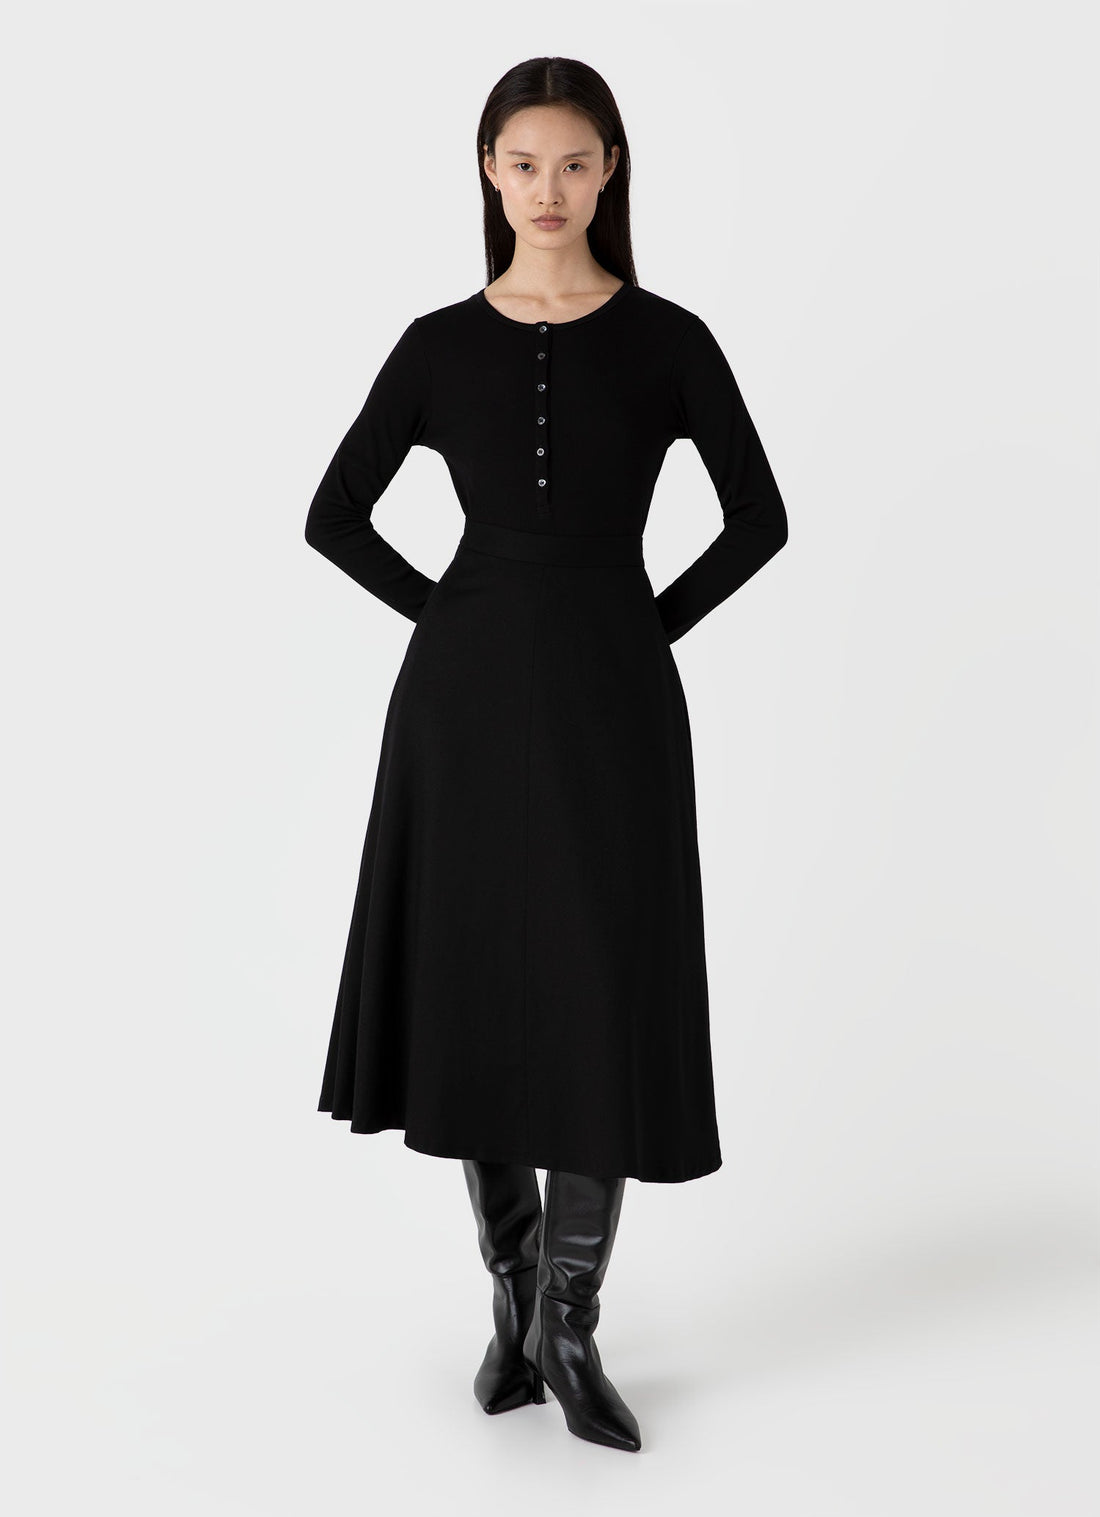 Women's A-line Skirt in Black